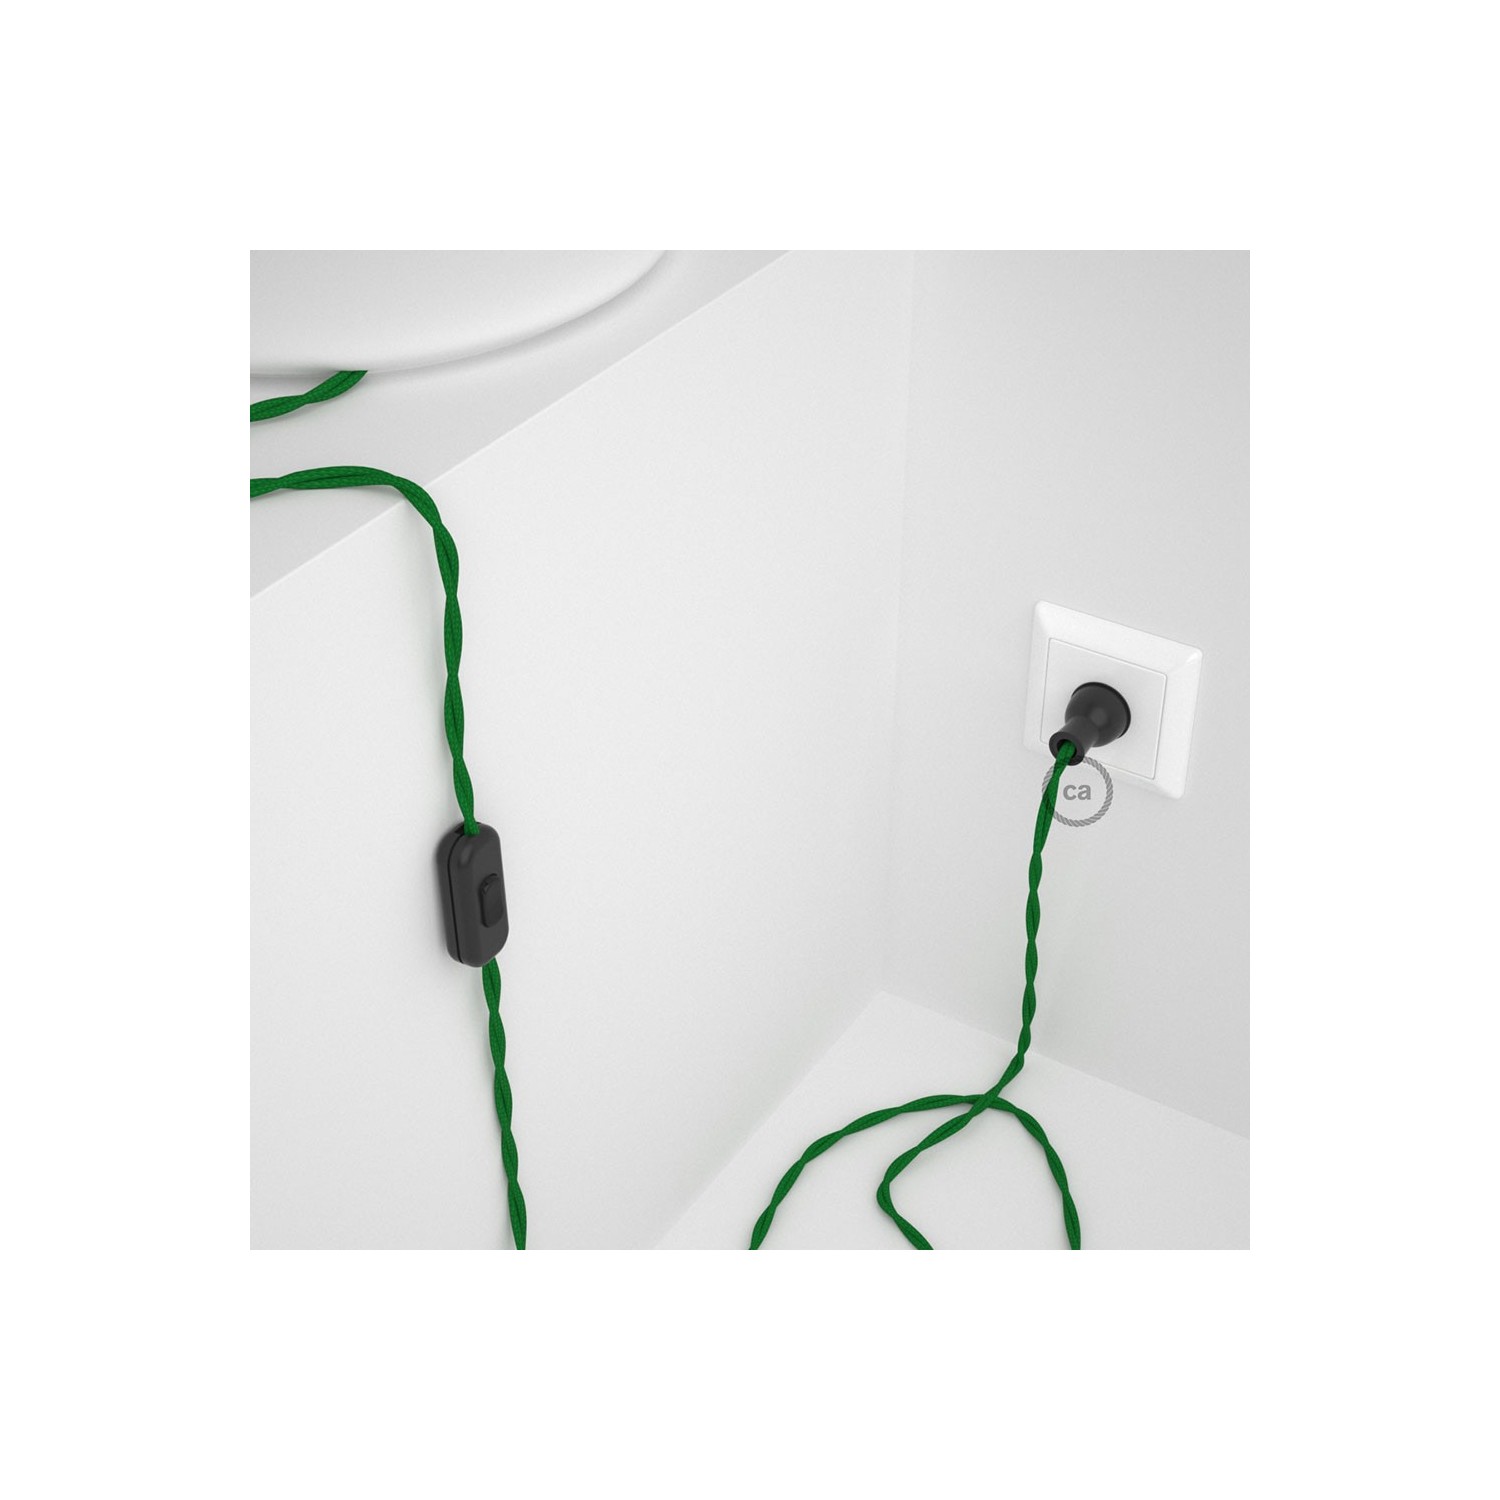 Cableado para lámpara de mesa, cable TM06 Rayón Verde 1,8 m. Elige el color de la clavija y del interruptor!